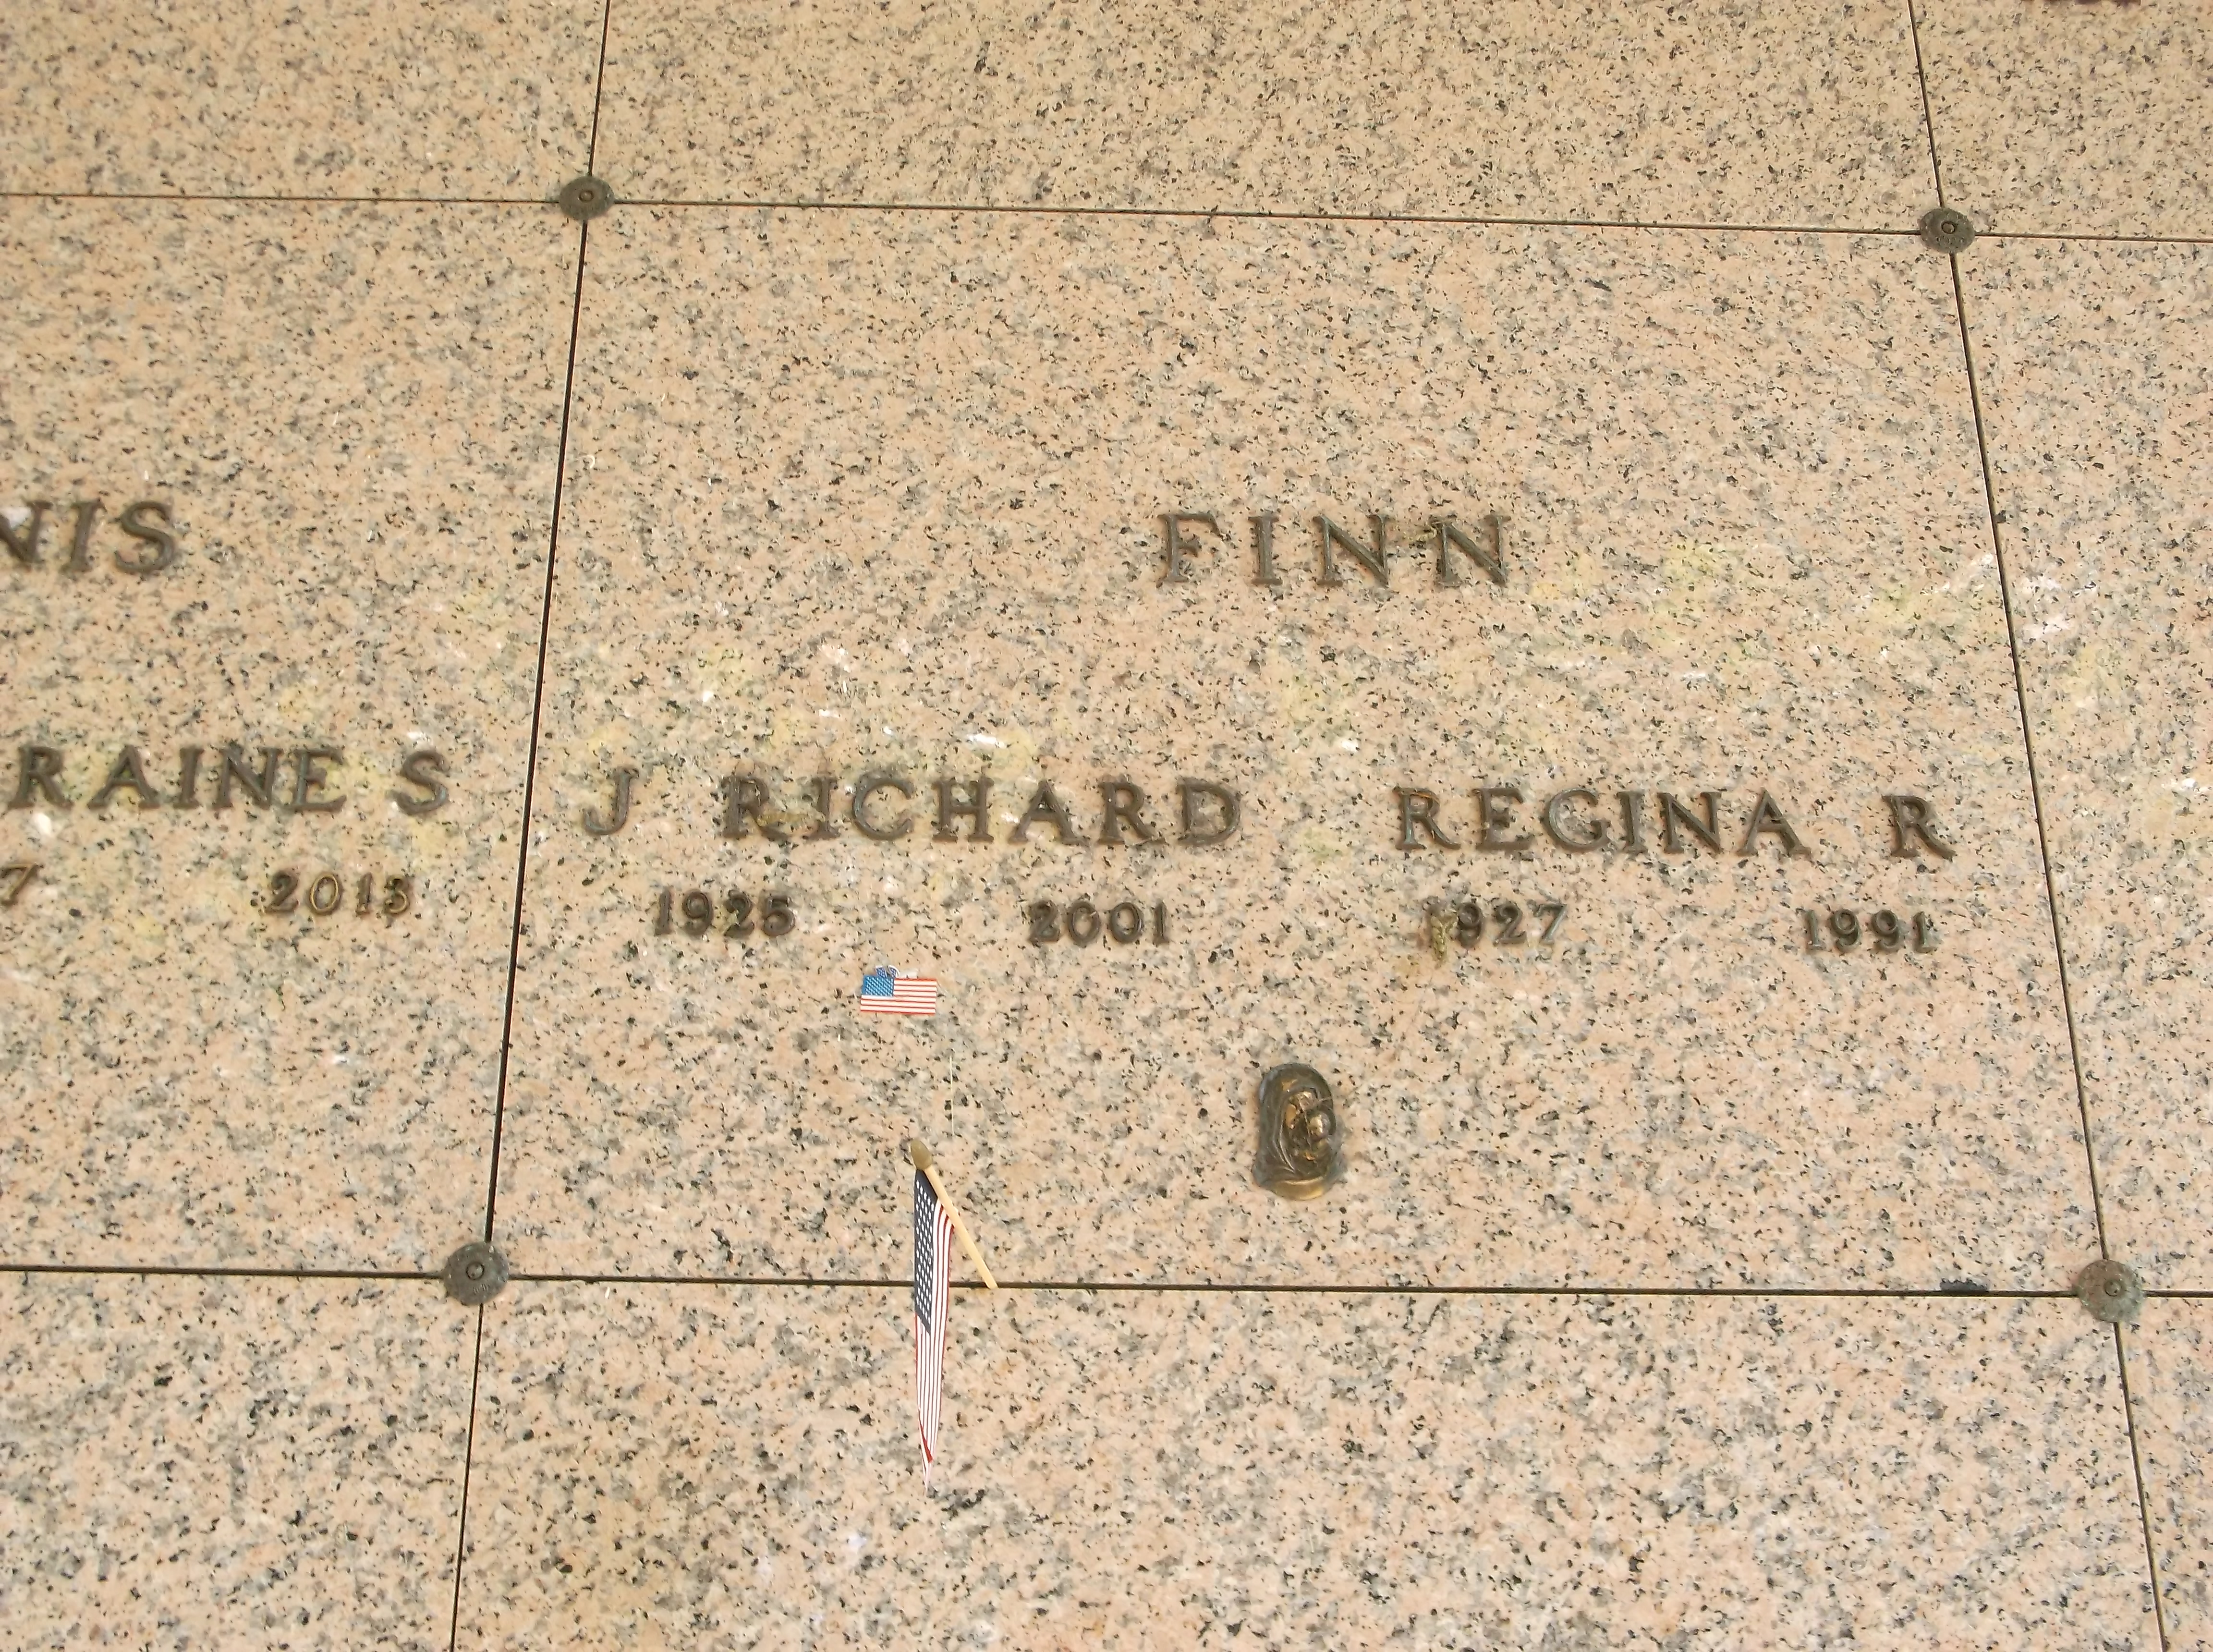 Regina R Finn